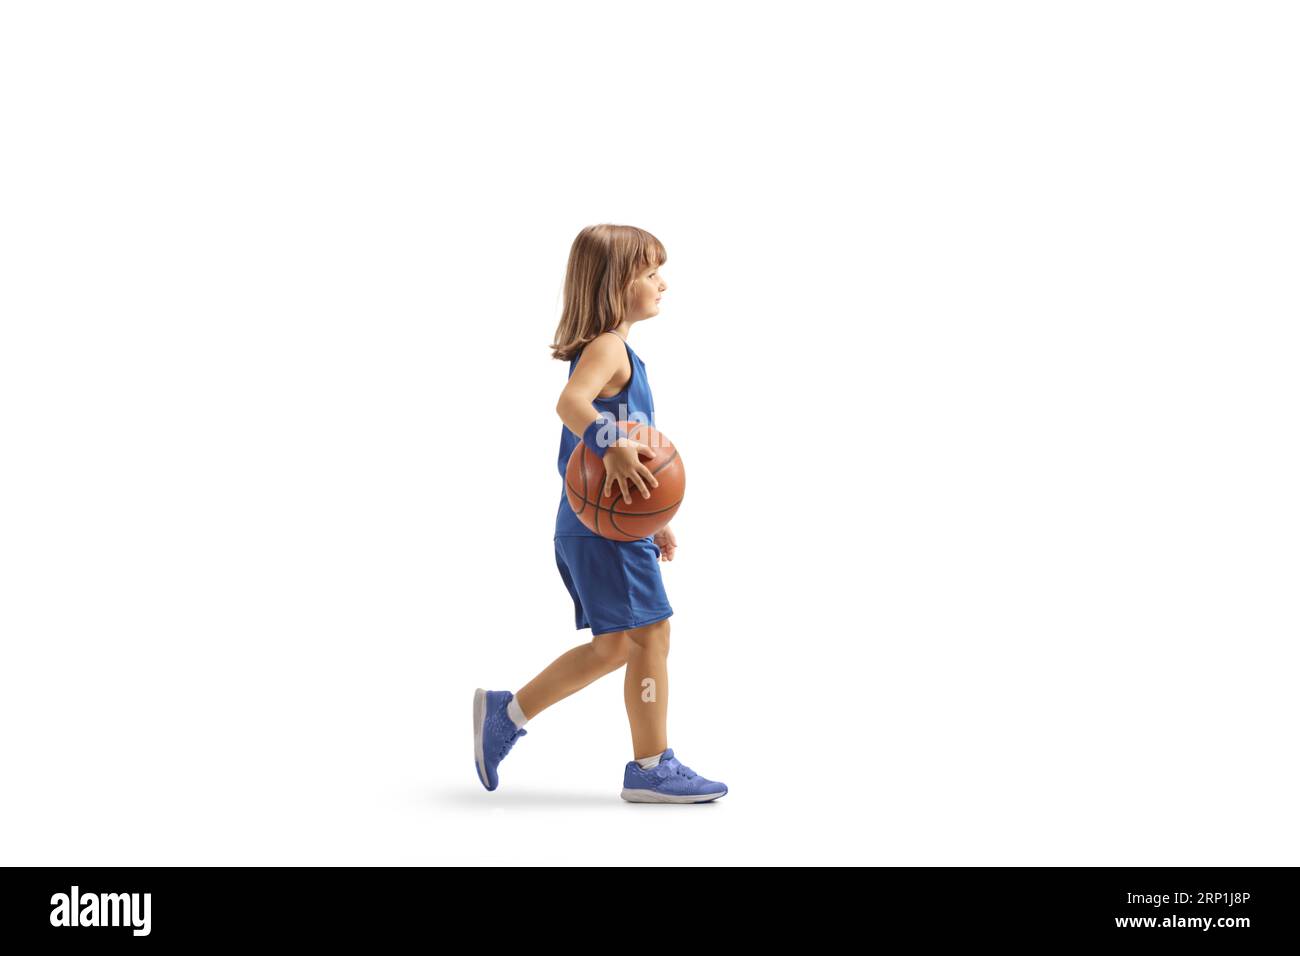 Petite fille dans un maillot bleu de basket-ball marchant et tenant une balle isolée sur fond blanc Banque D'Images